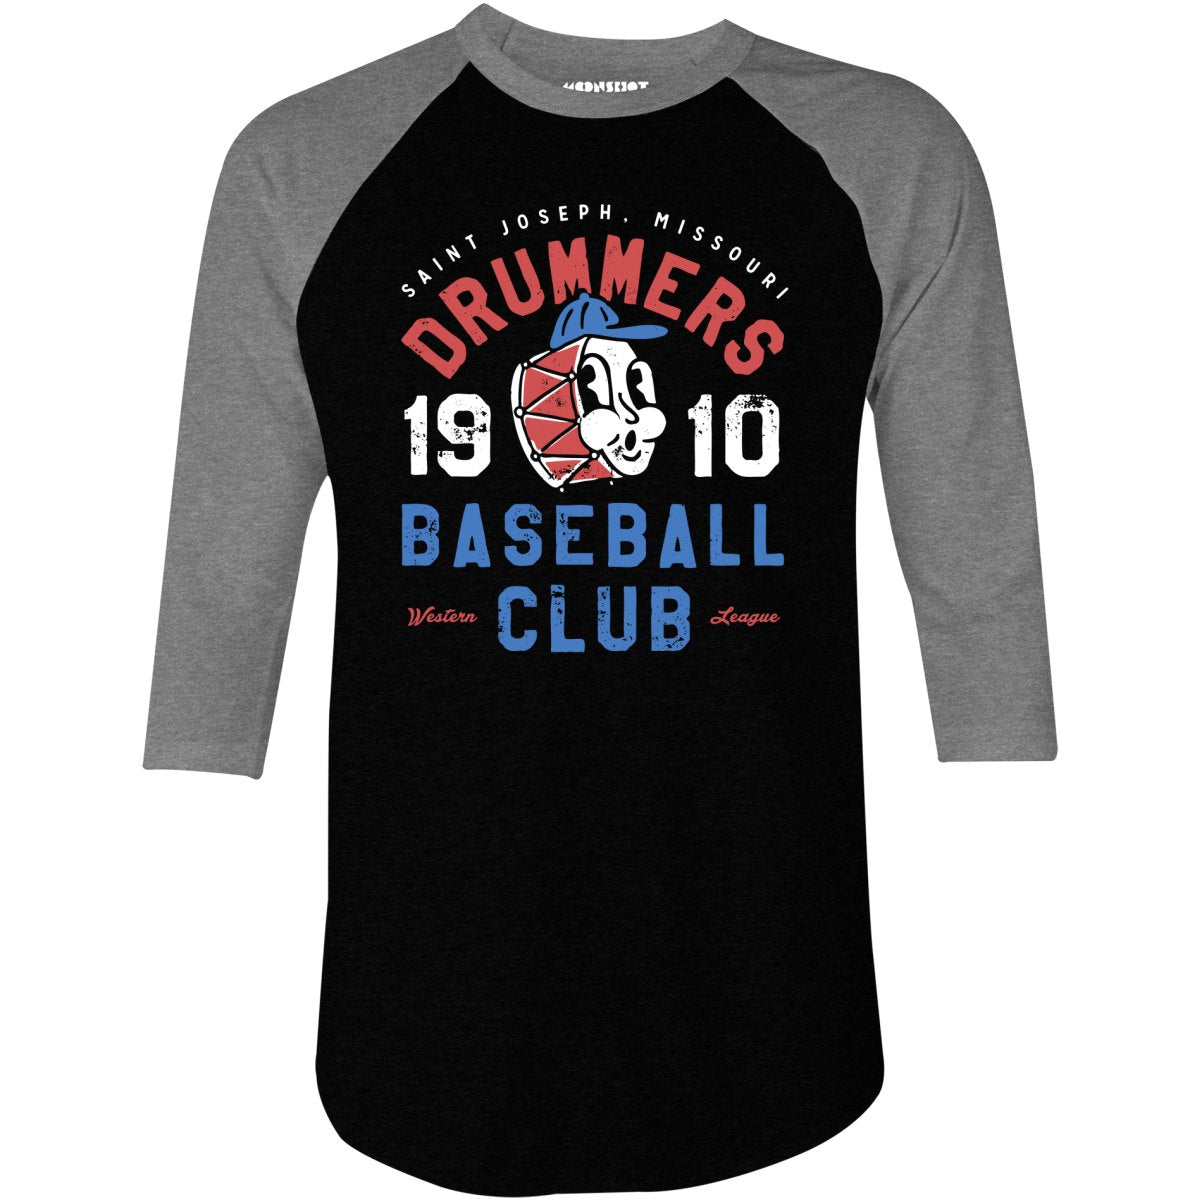 Saint Joseph Drummers - Missouri - Vintage Defunct Baseball Teams - 3/4 Sleeve Raglan T-Shirt